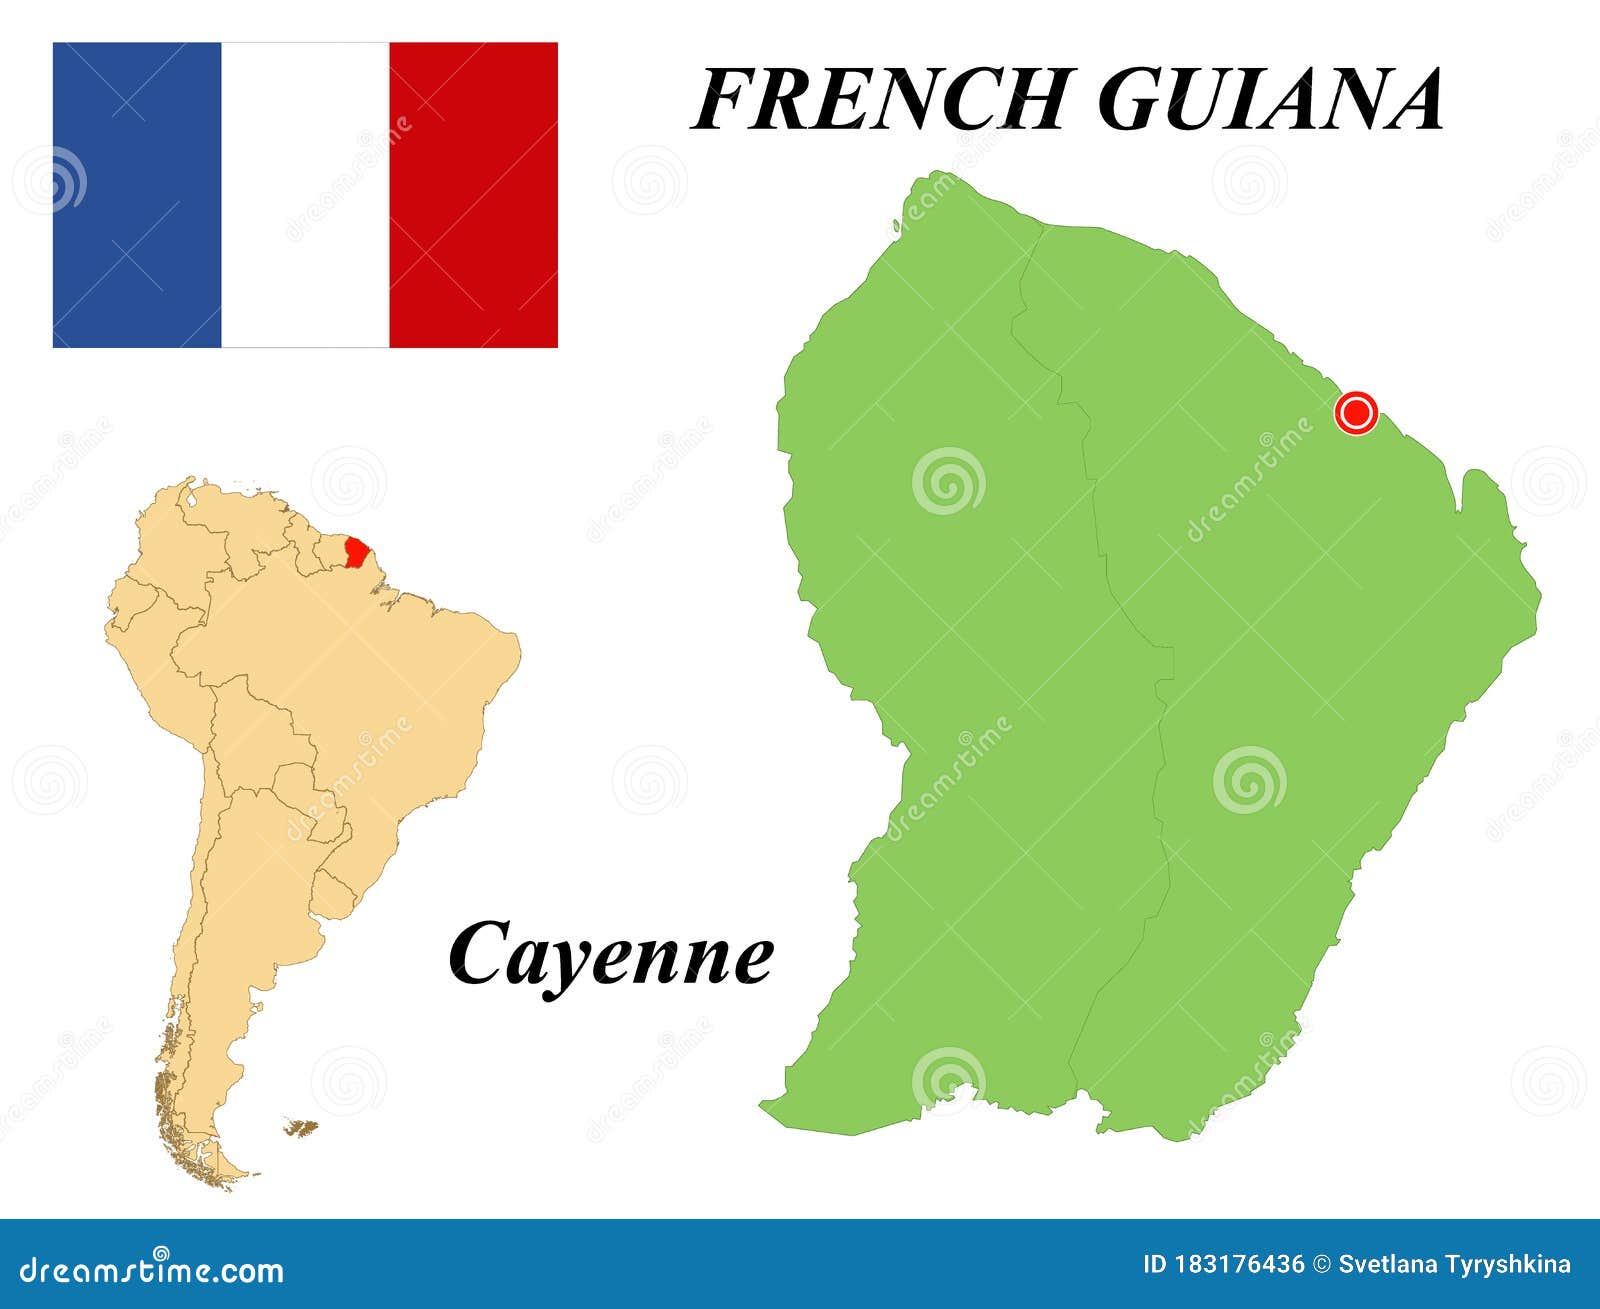 Guyane française: situation géographique